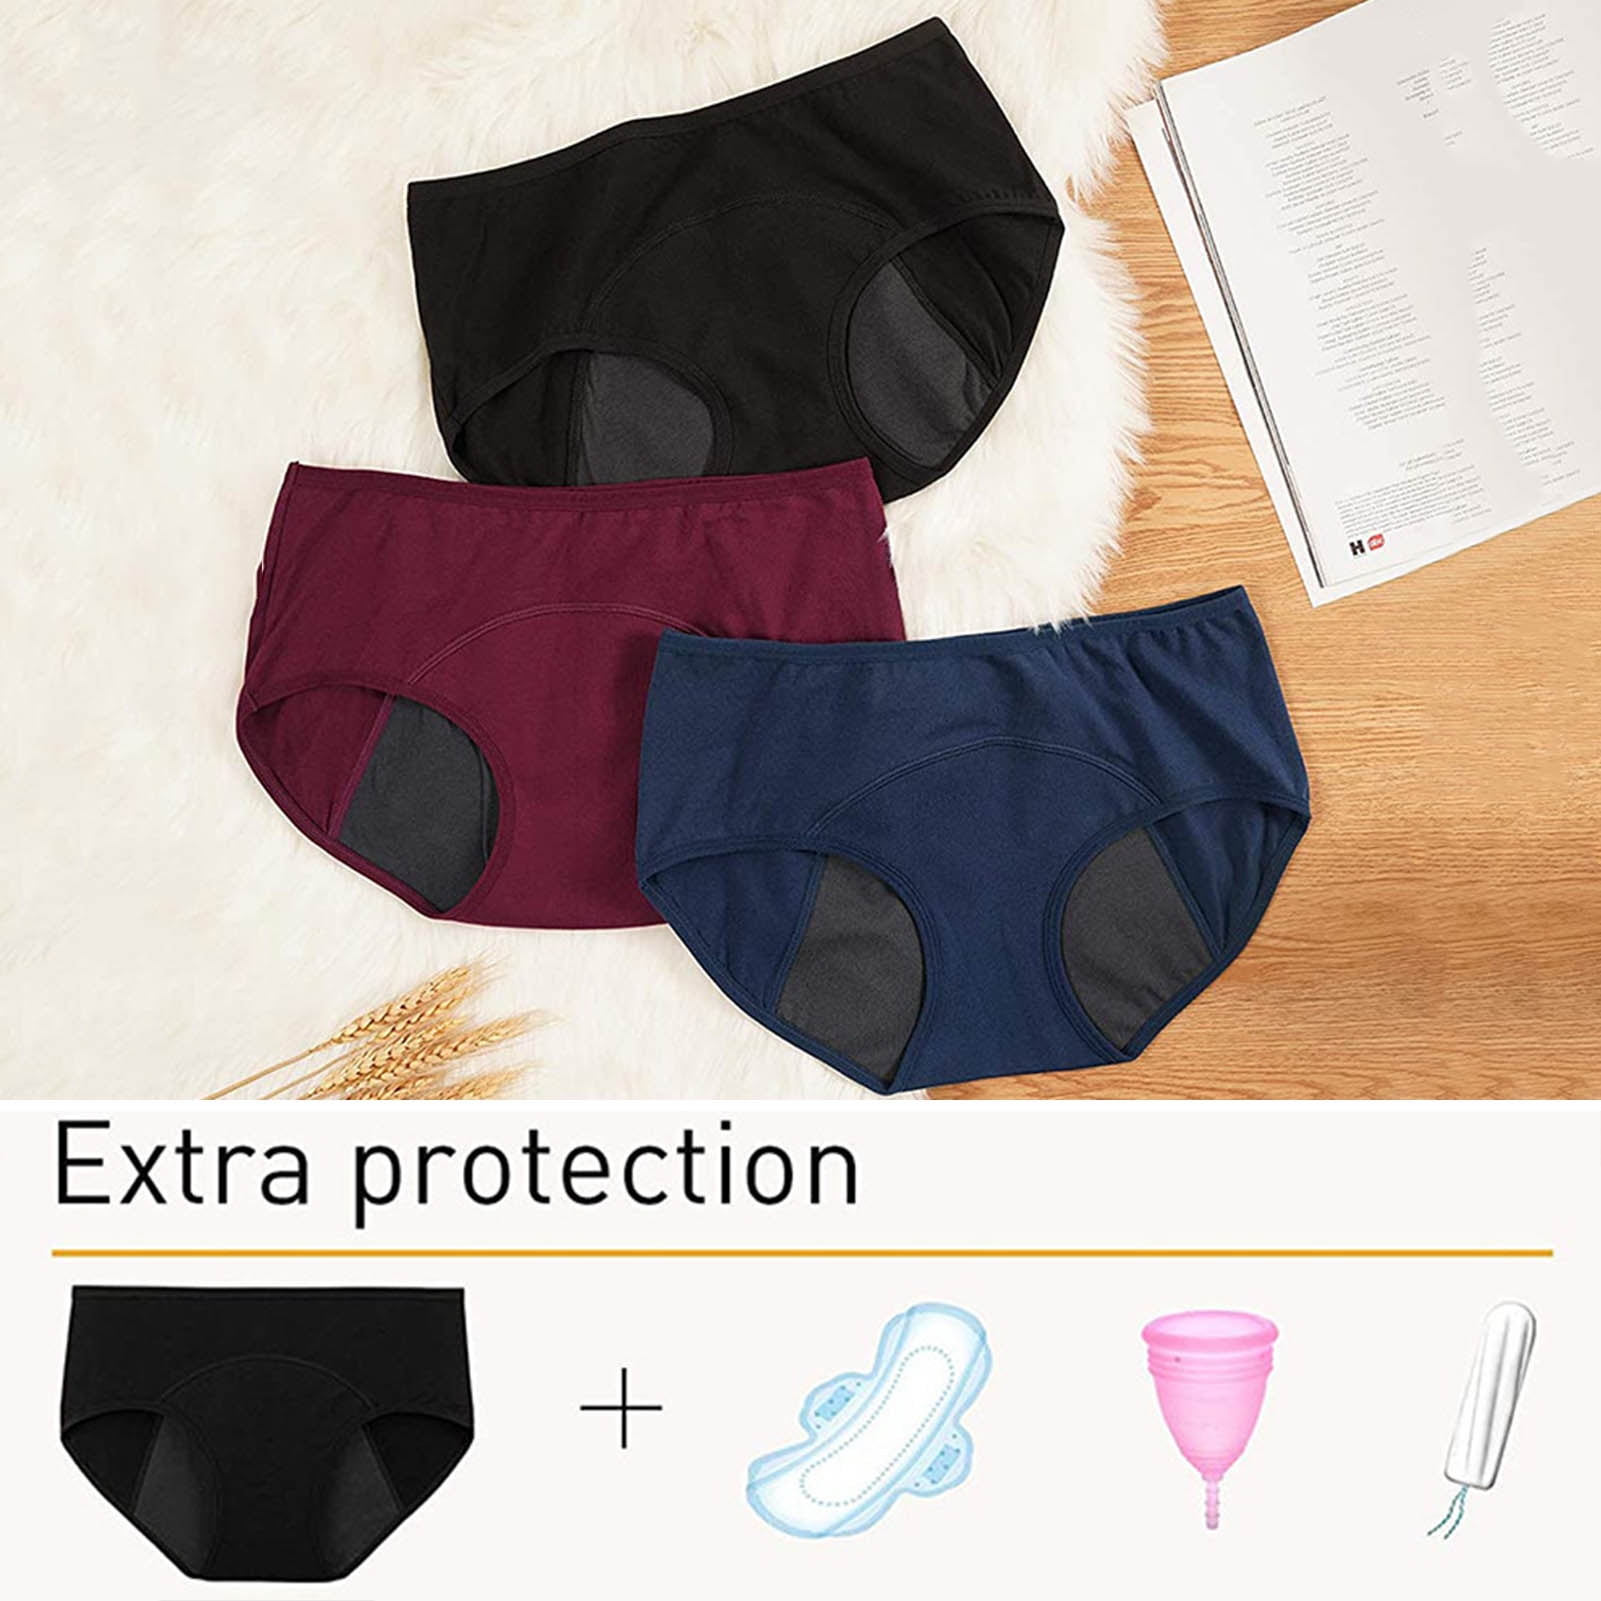  THINX Thong Period Underwear, Menstrual Underwear